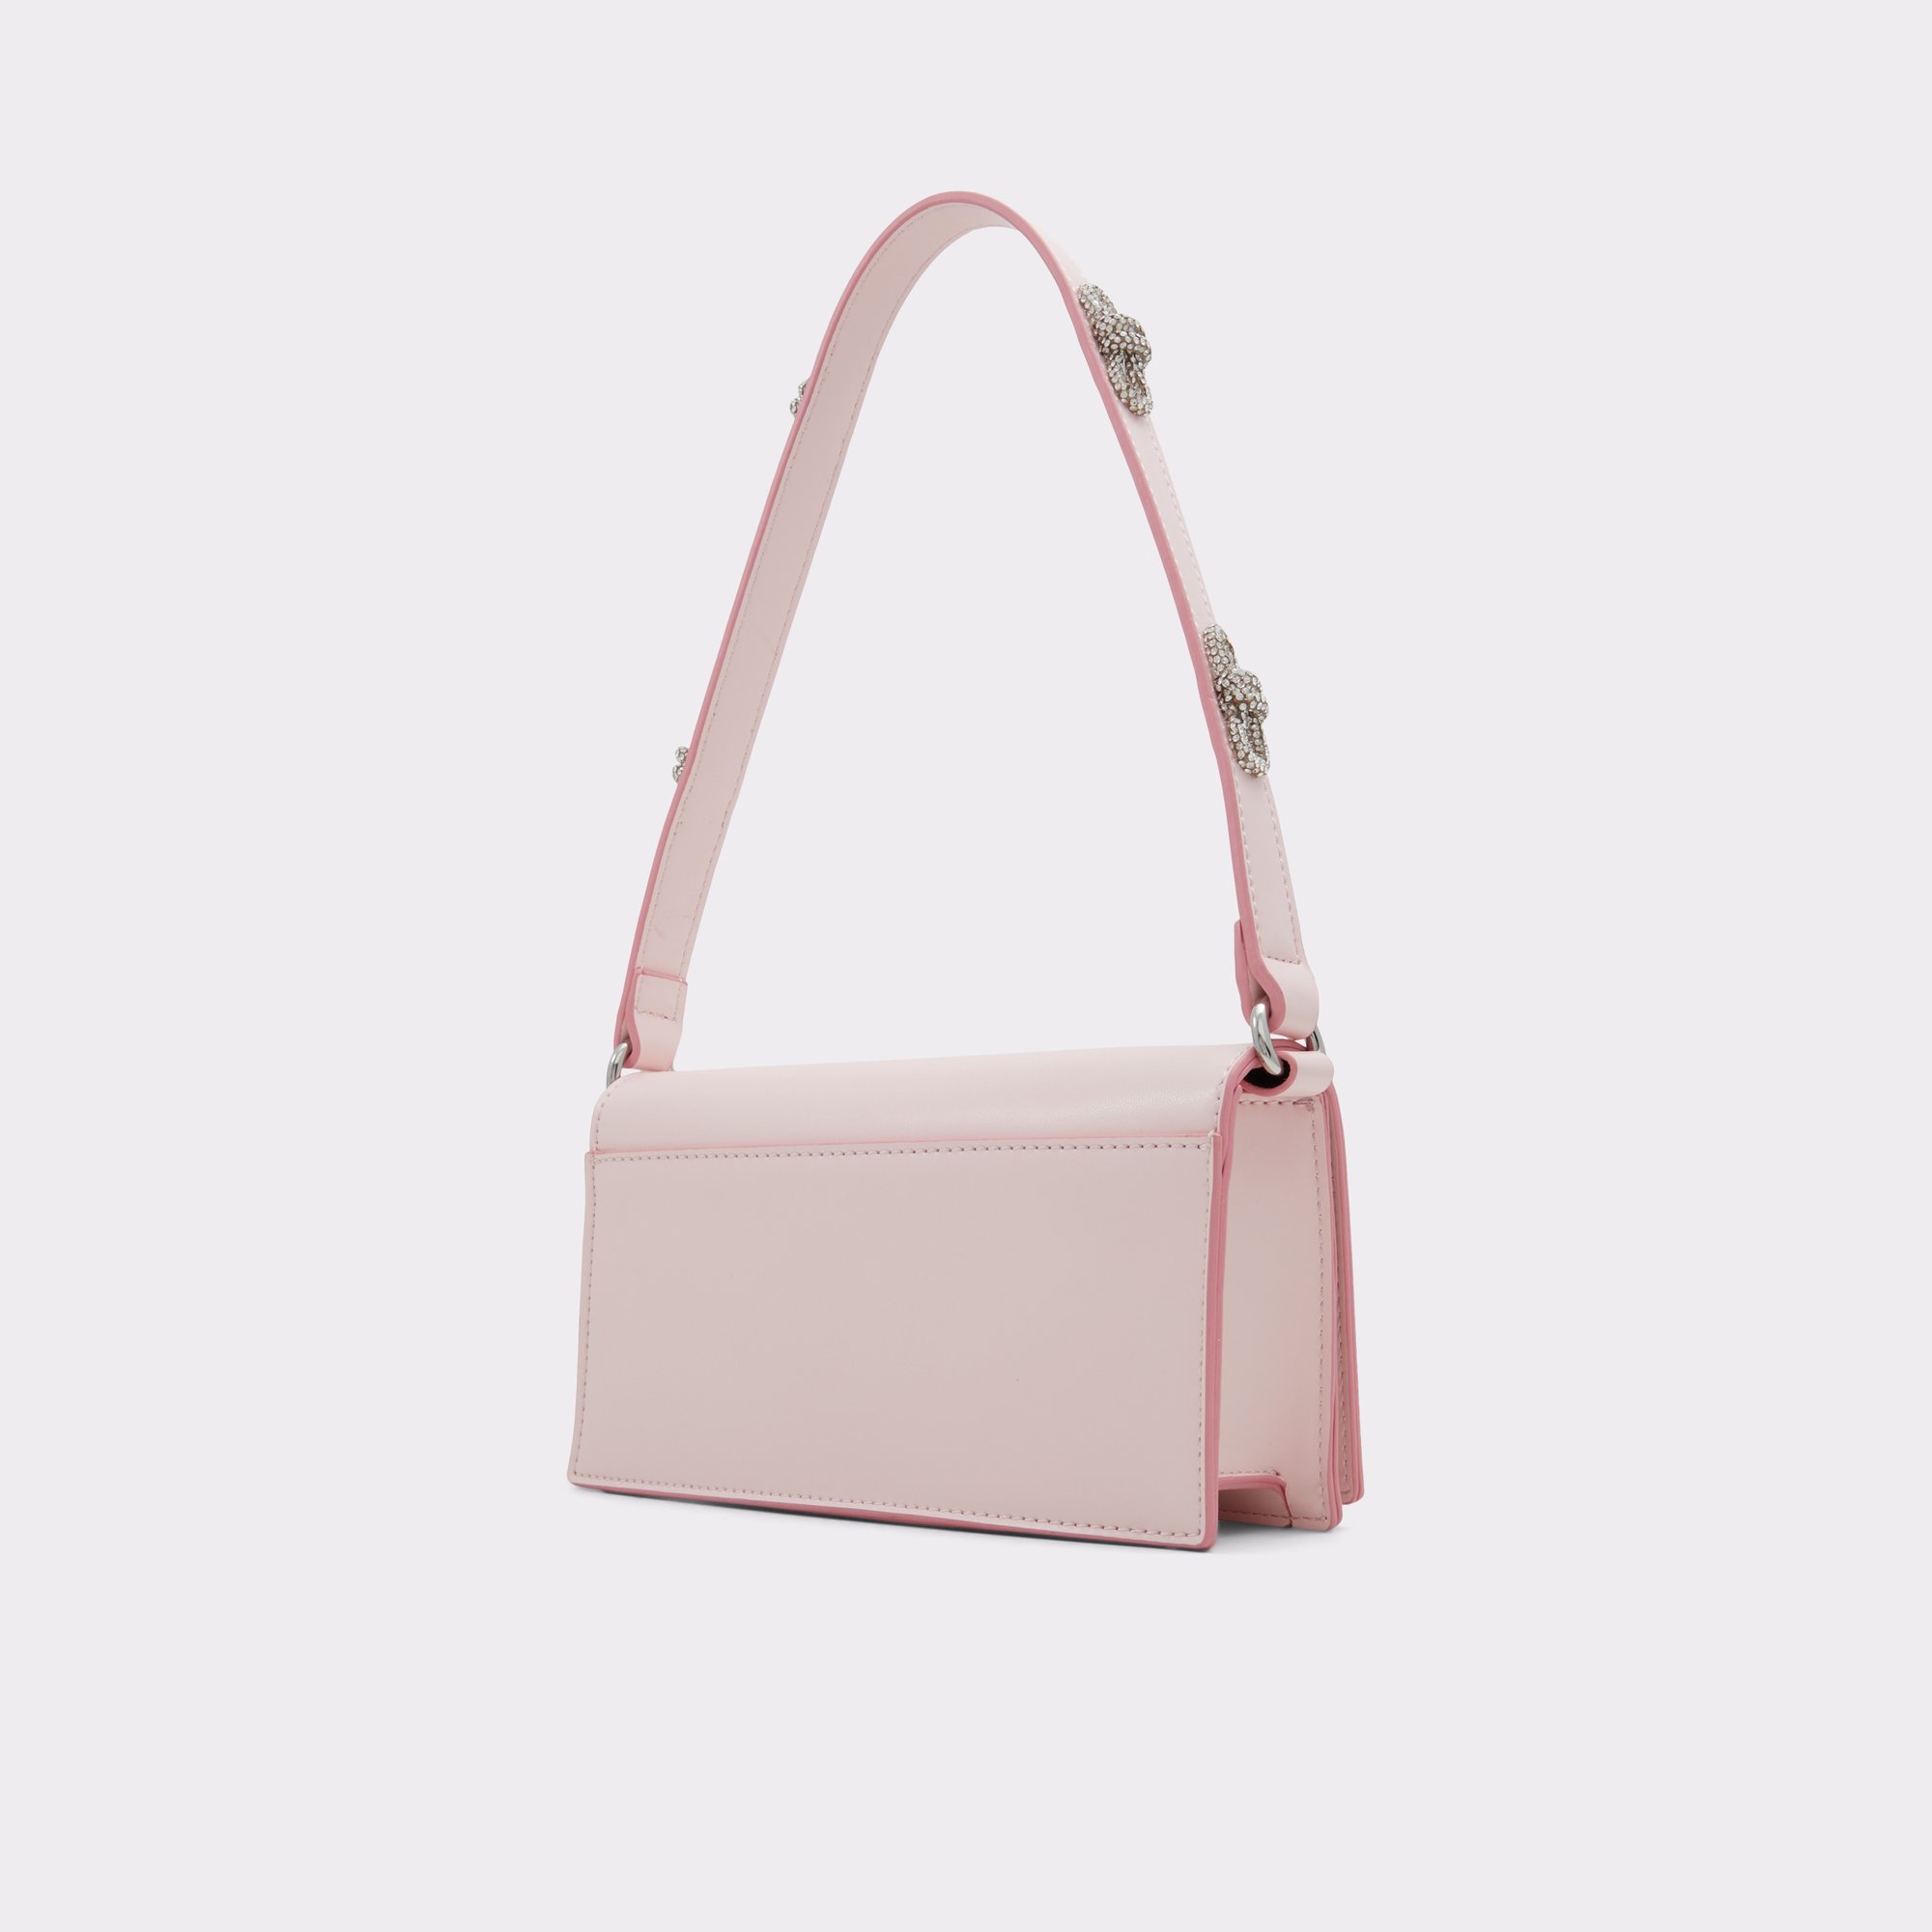 Qeelaa Light Pink Women's Top Handle Bags | ALDO Canada